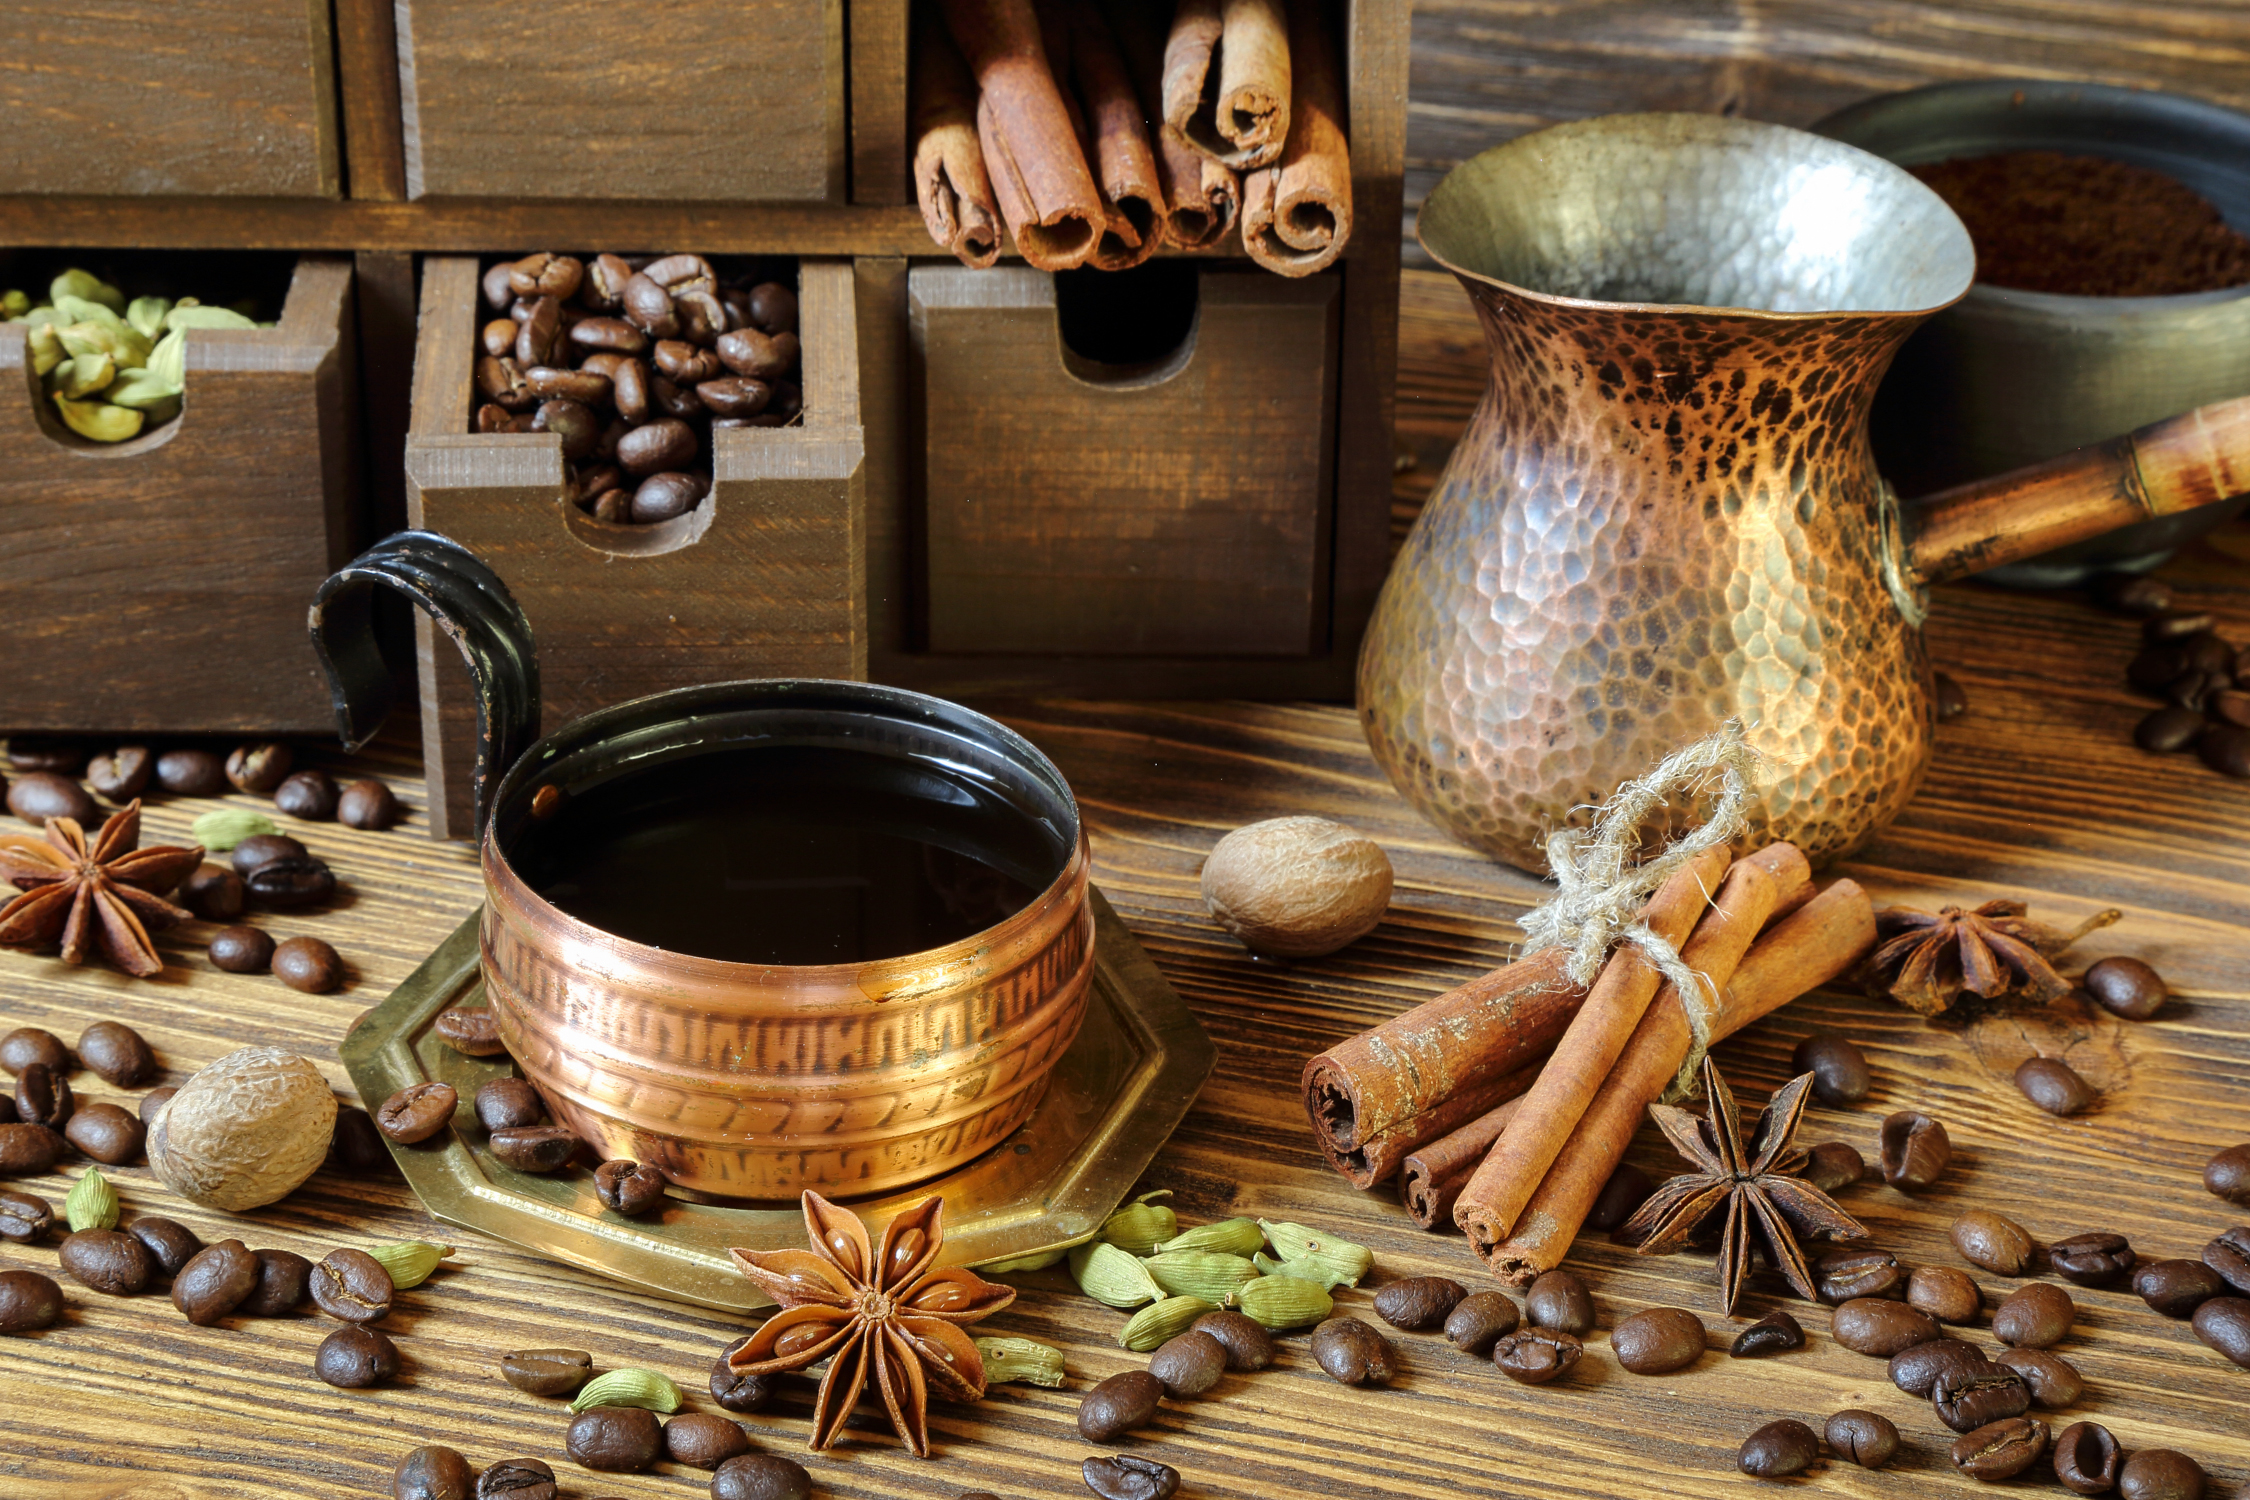 kawa z kardamonem tradycyjnie przygotowywana jest w tygielku